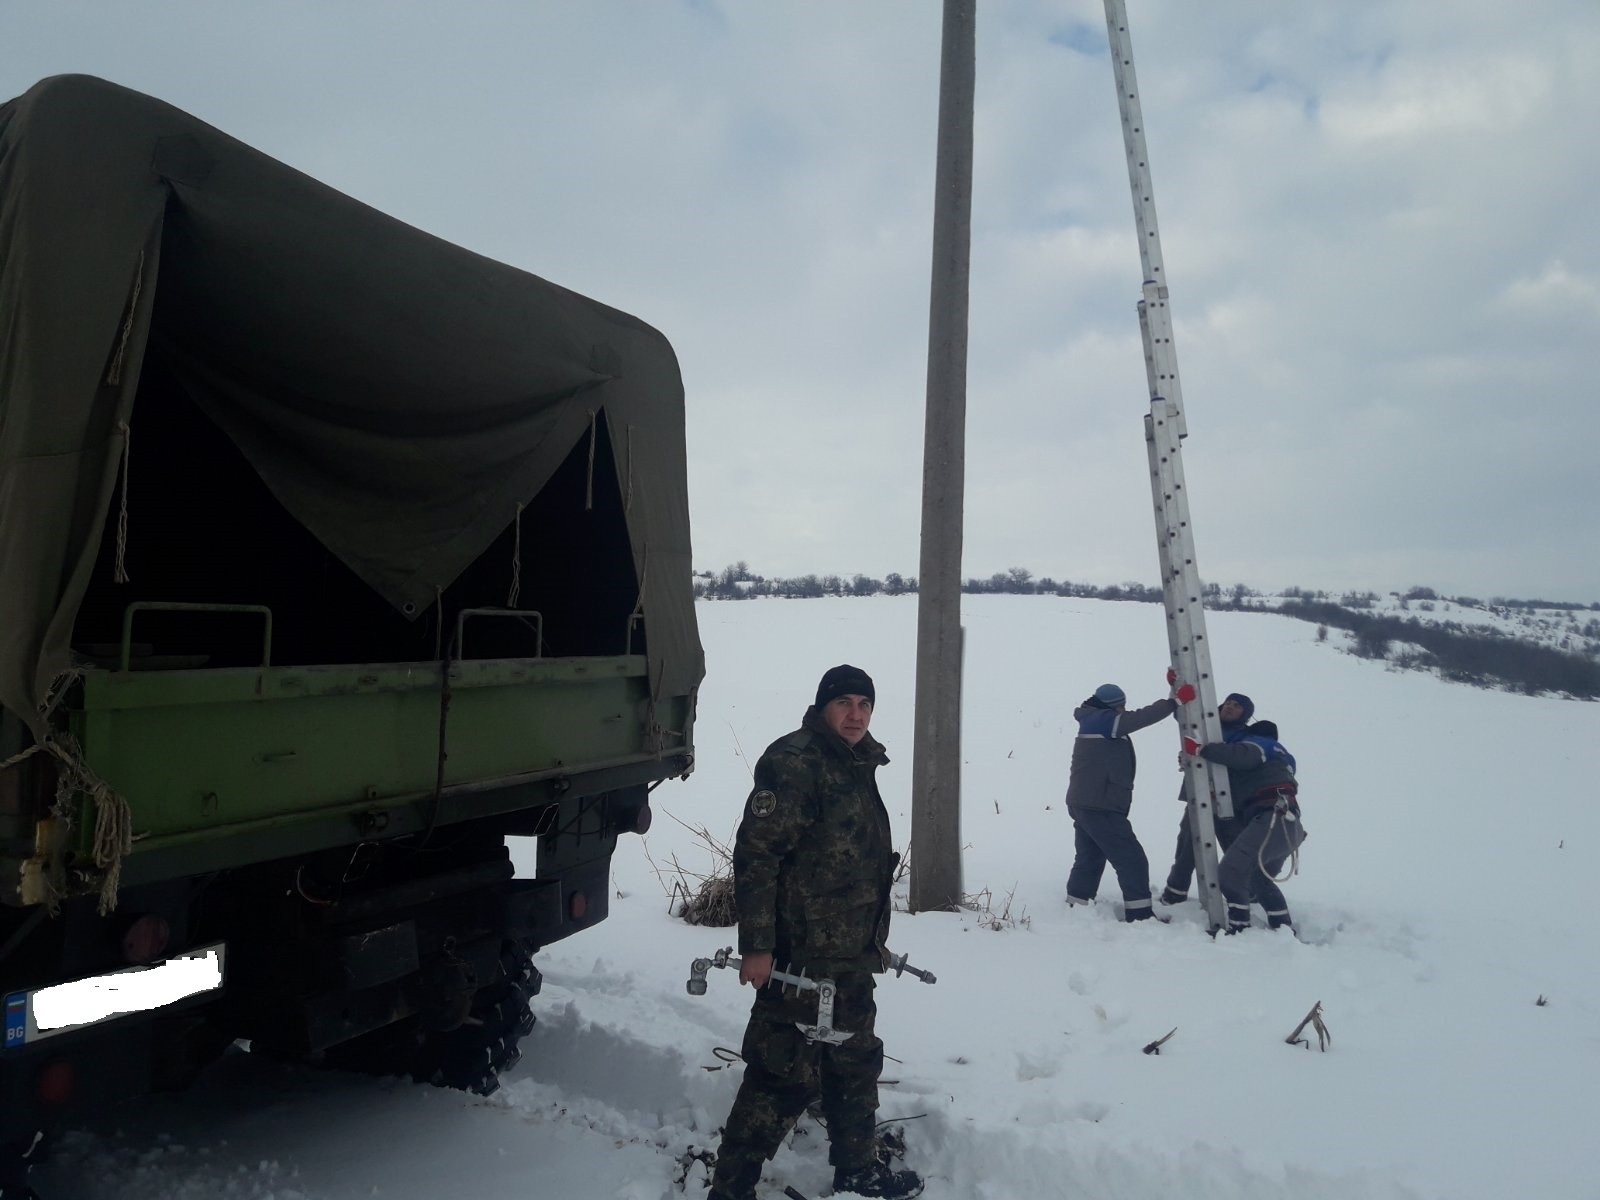 93 снегопочистващи машини са в готовност за почистване на републиканската пътна мрежа в Русенско

